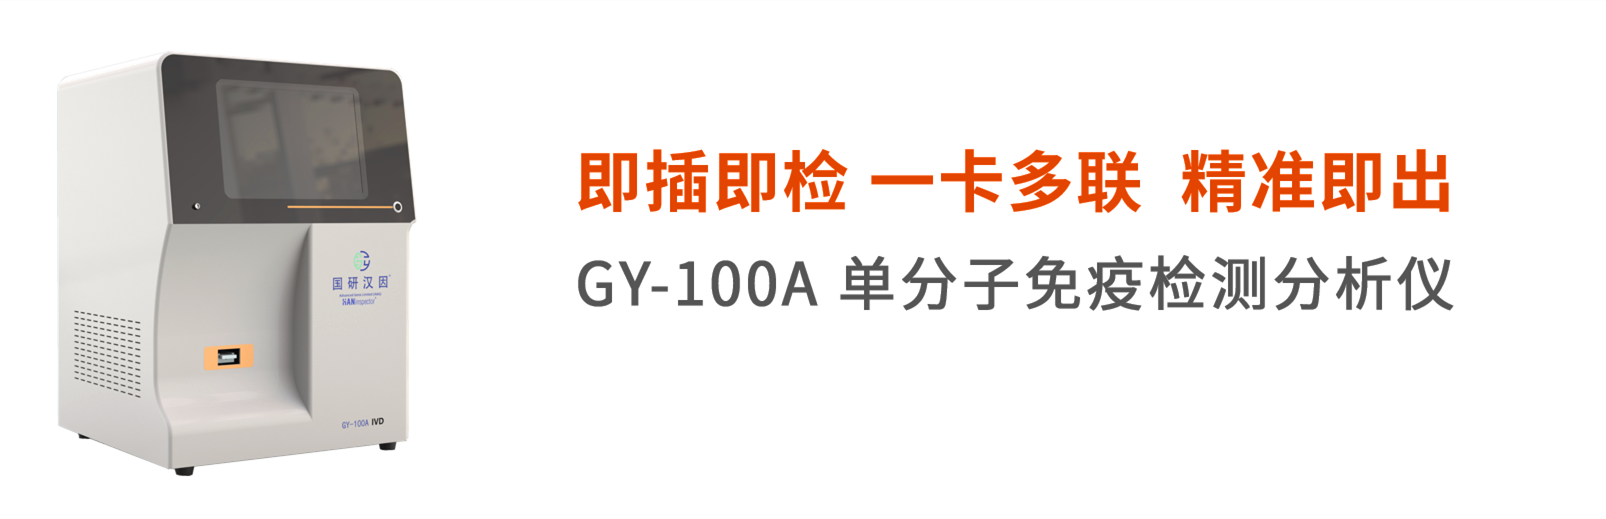 GY-100A单分子免疫分析仪